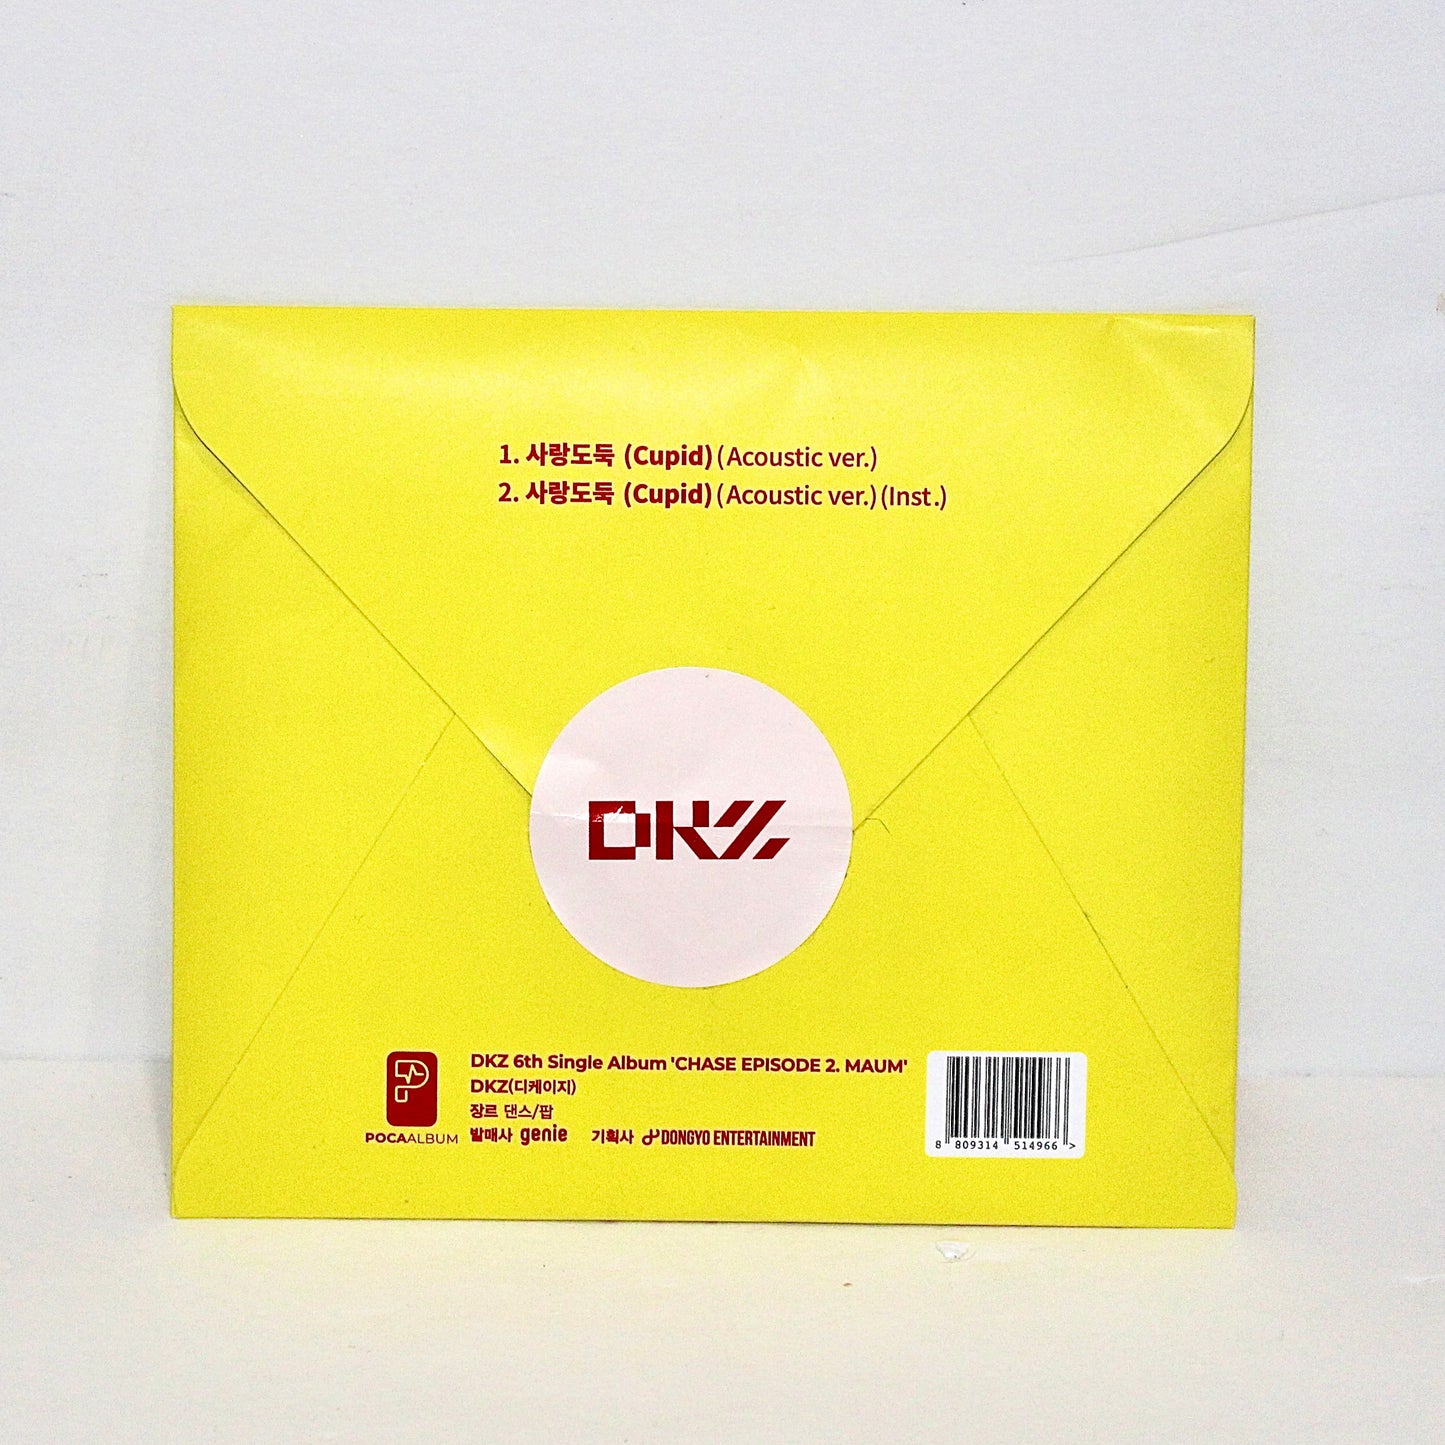 DKZ 6th Single Album: Chase Episode 2. Maum | Acoustic Ver.